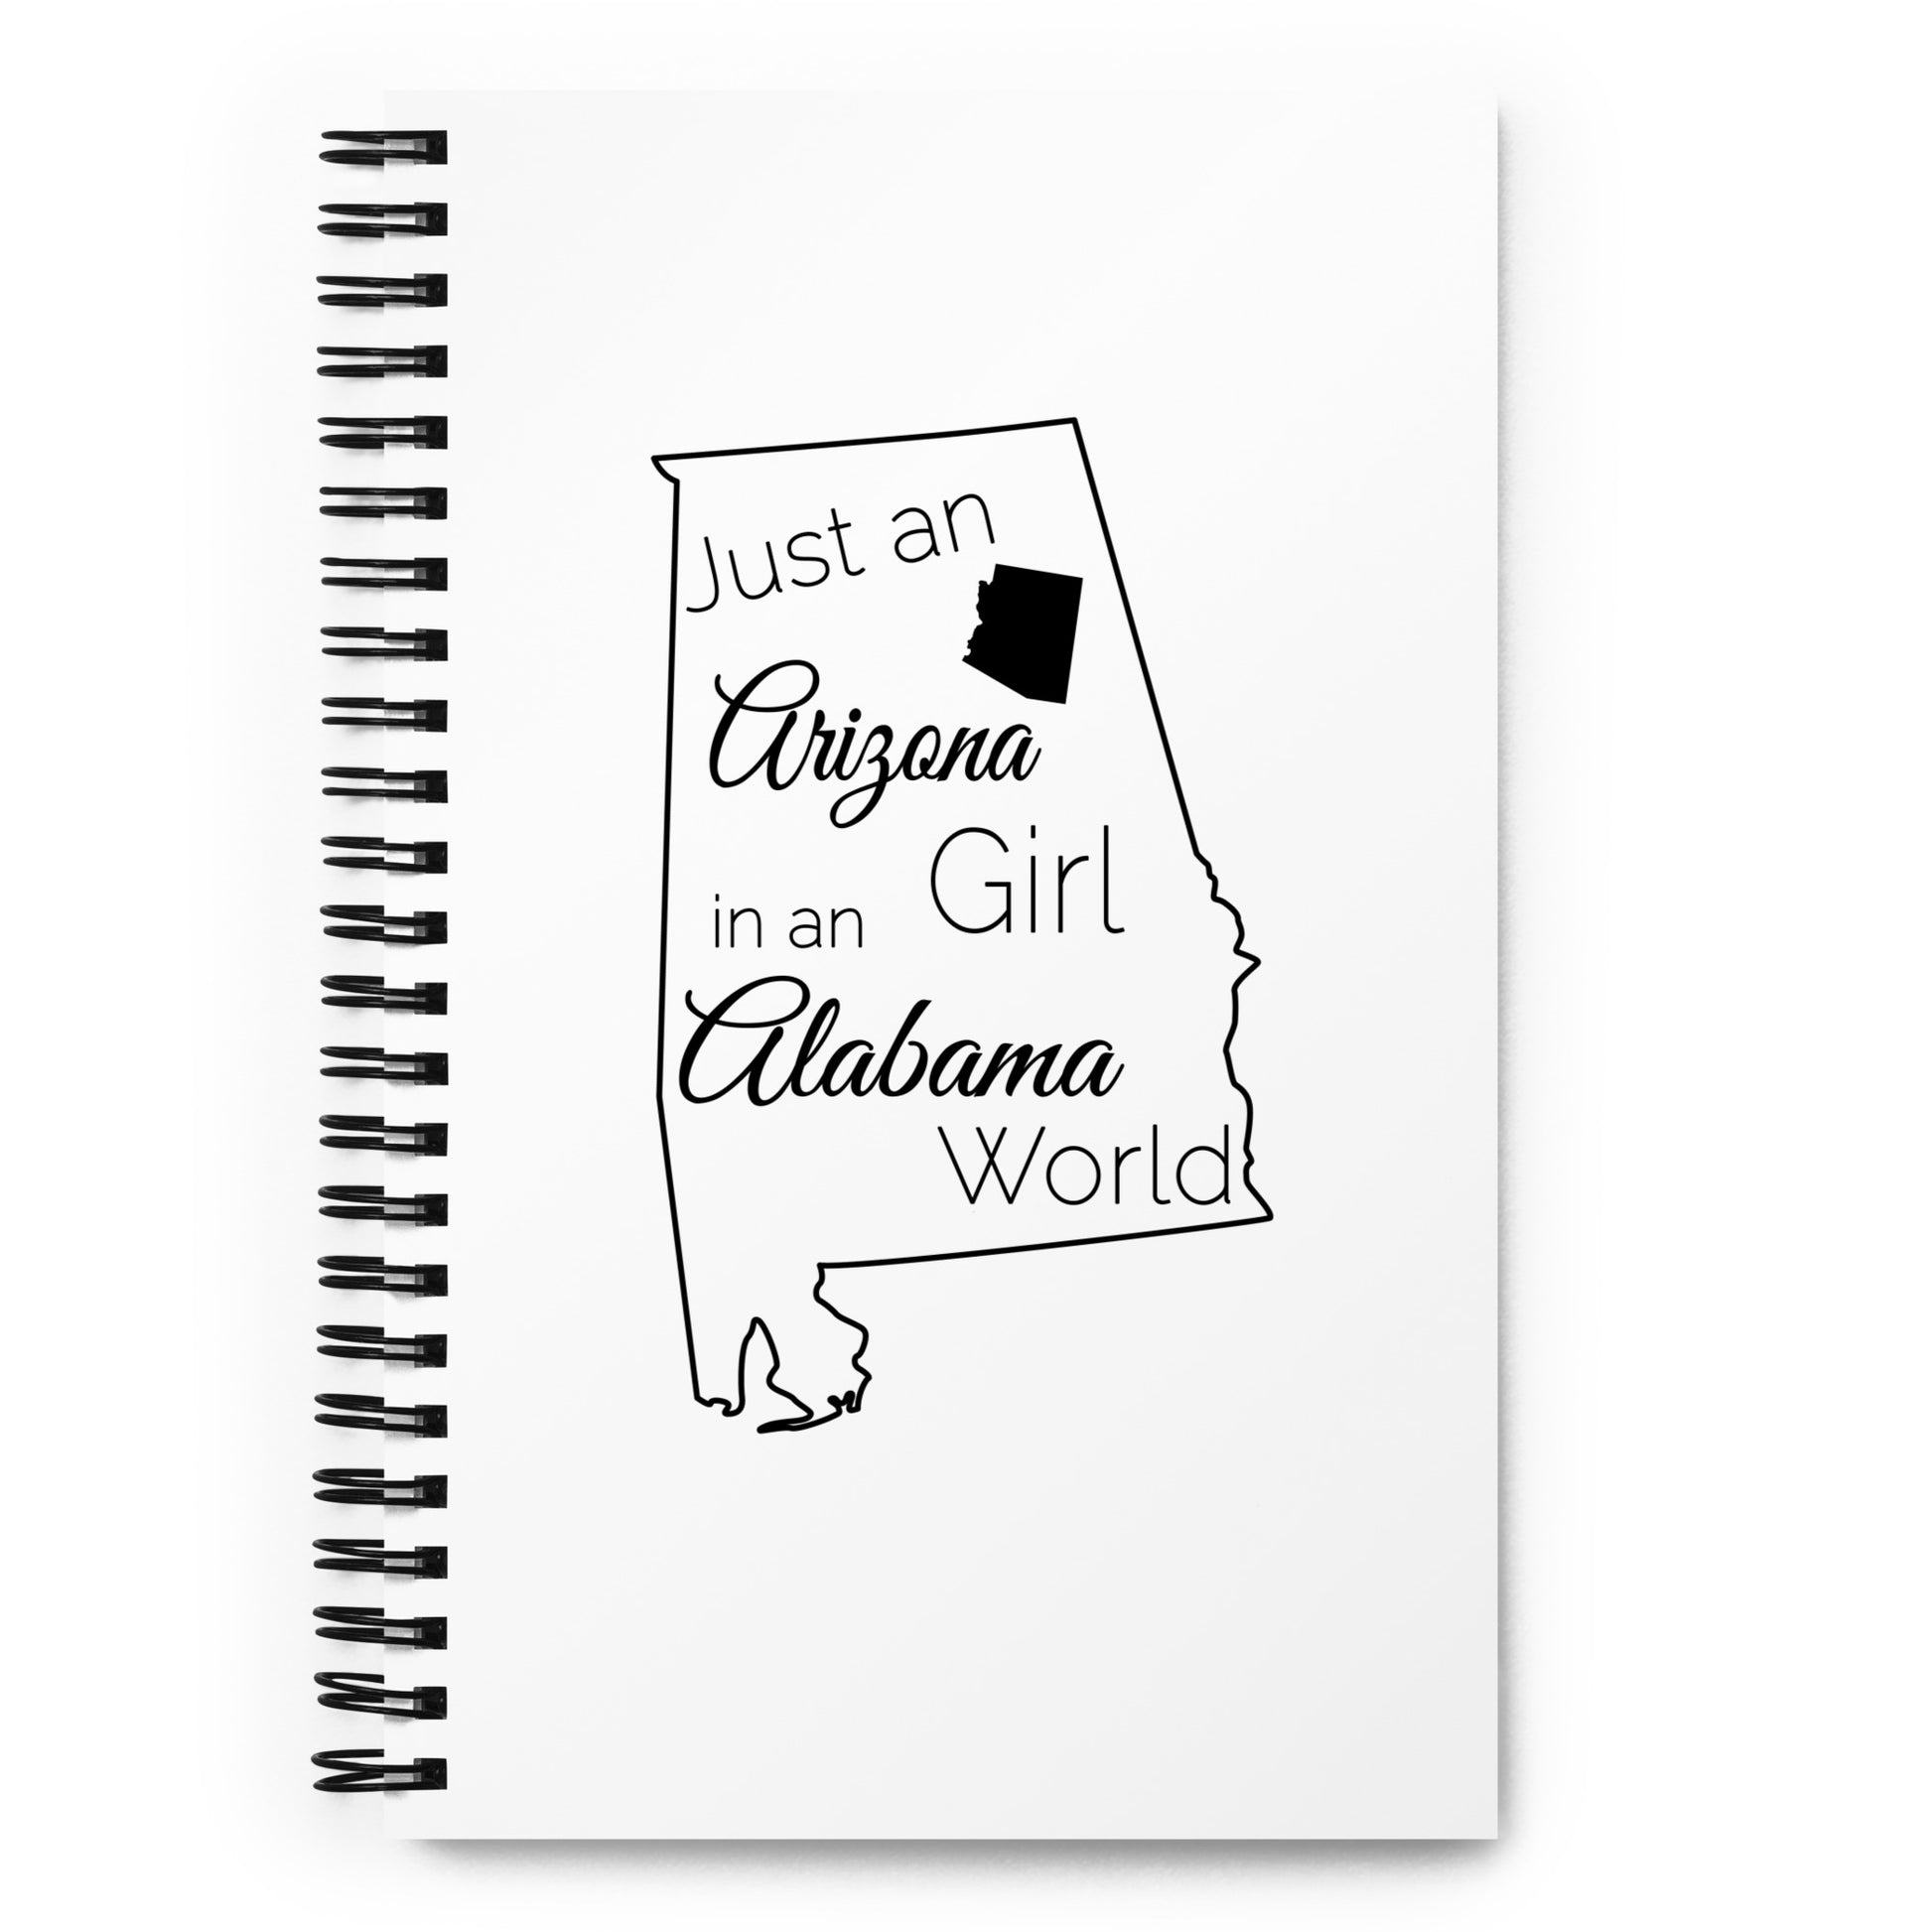 Just an Arizona Girl in an Alabama World Spiral notebook